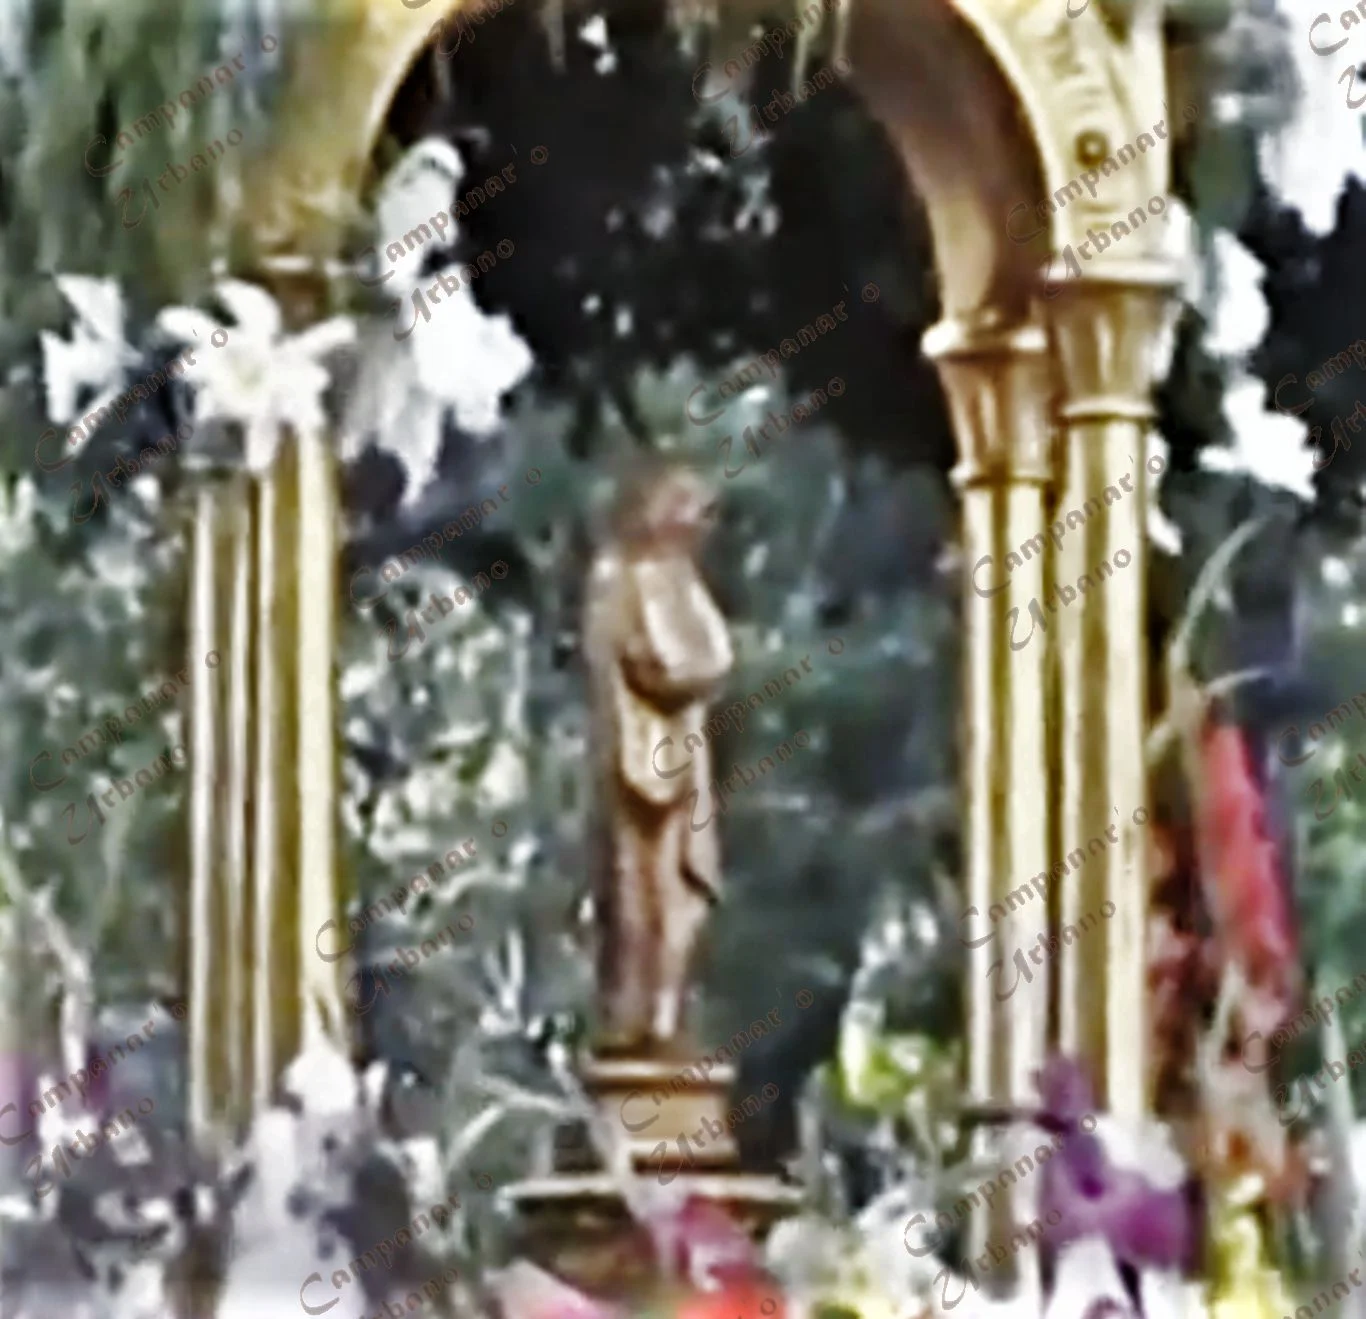 Procesión con la réplica de mayor tamaño de Nuestra Señora de Copacabana. Guarenas, año 2000.